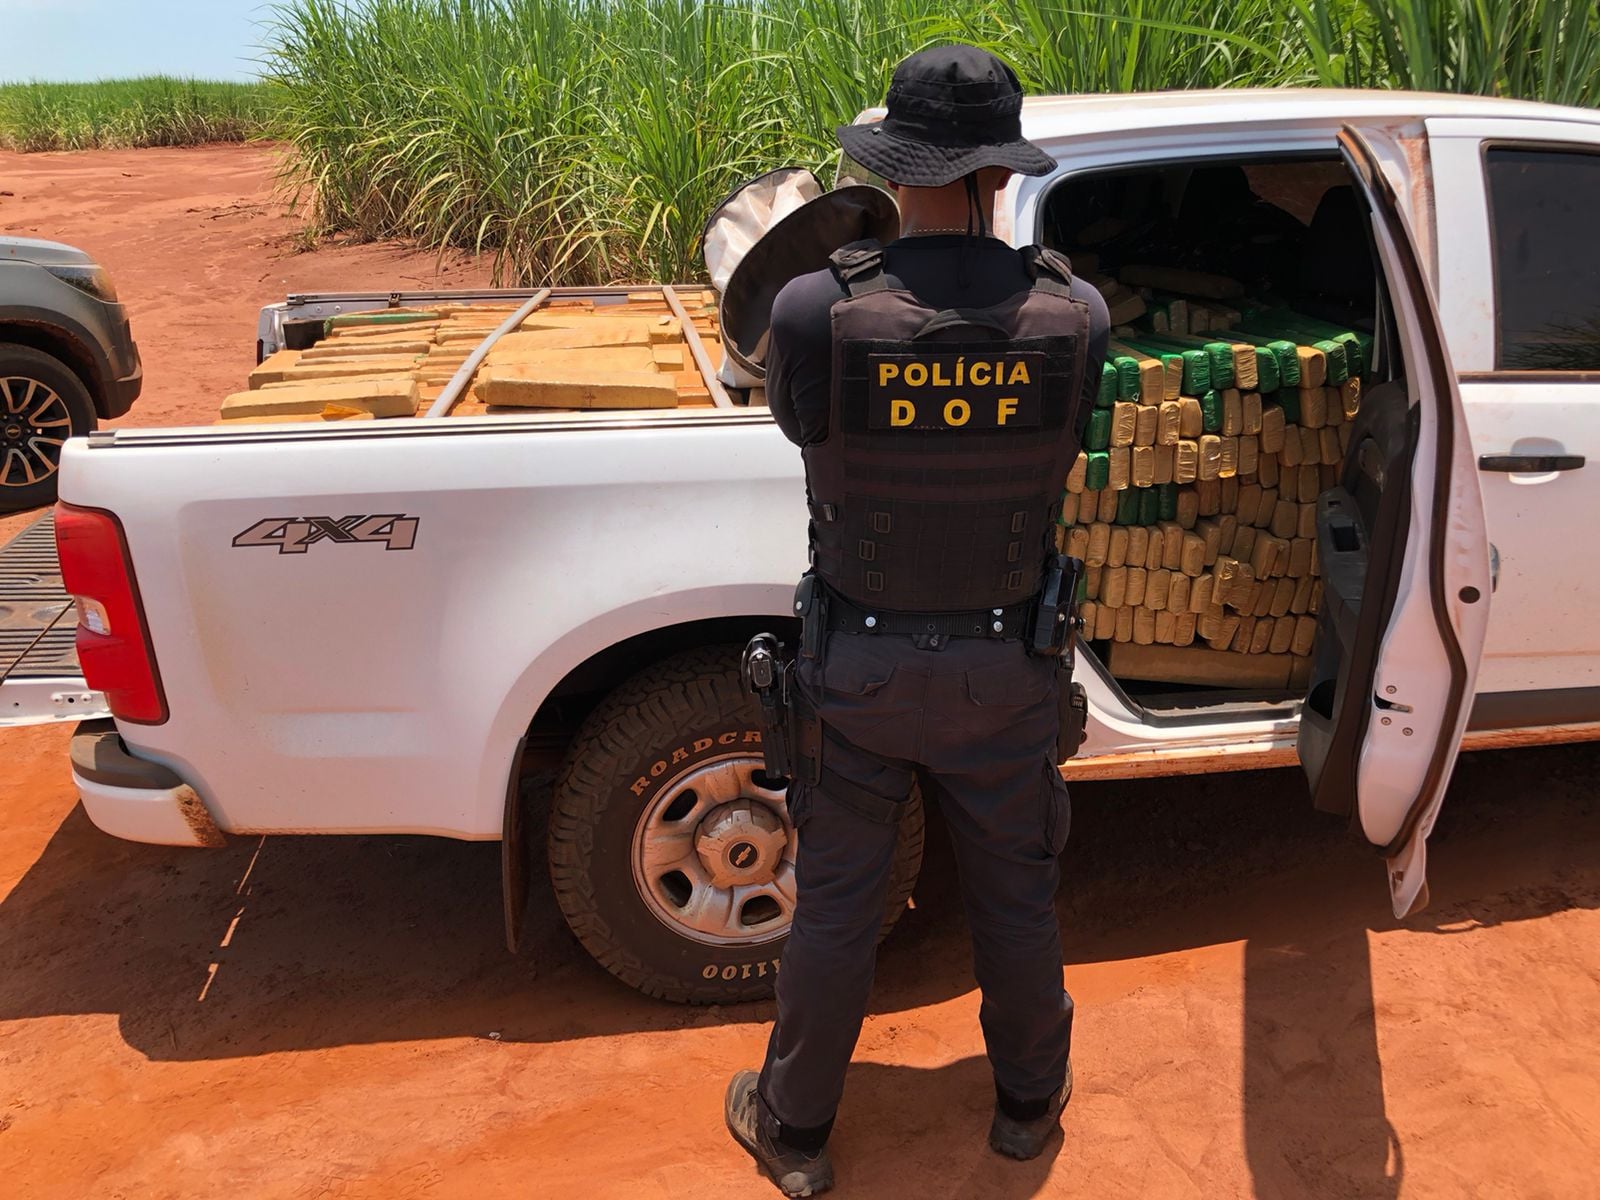 Camionete furtada em Santa Catarina foi apreendida pelo DOF com mais de uma tonelada de drogas